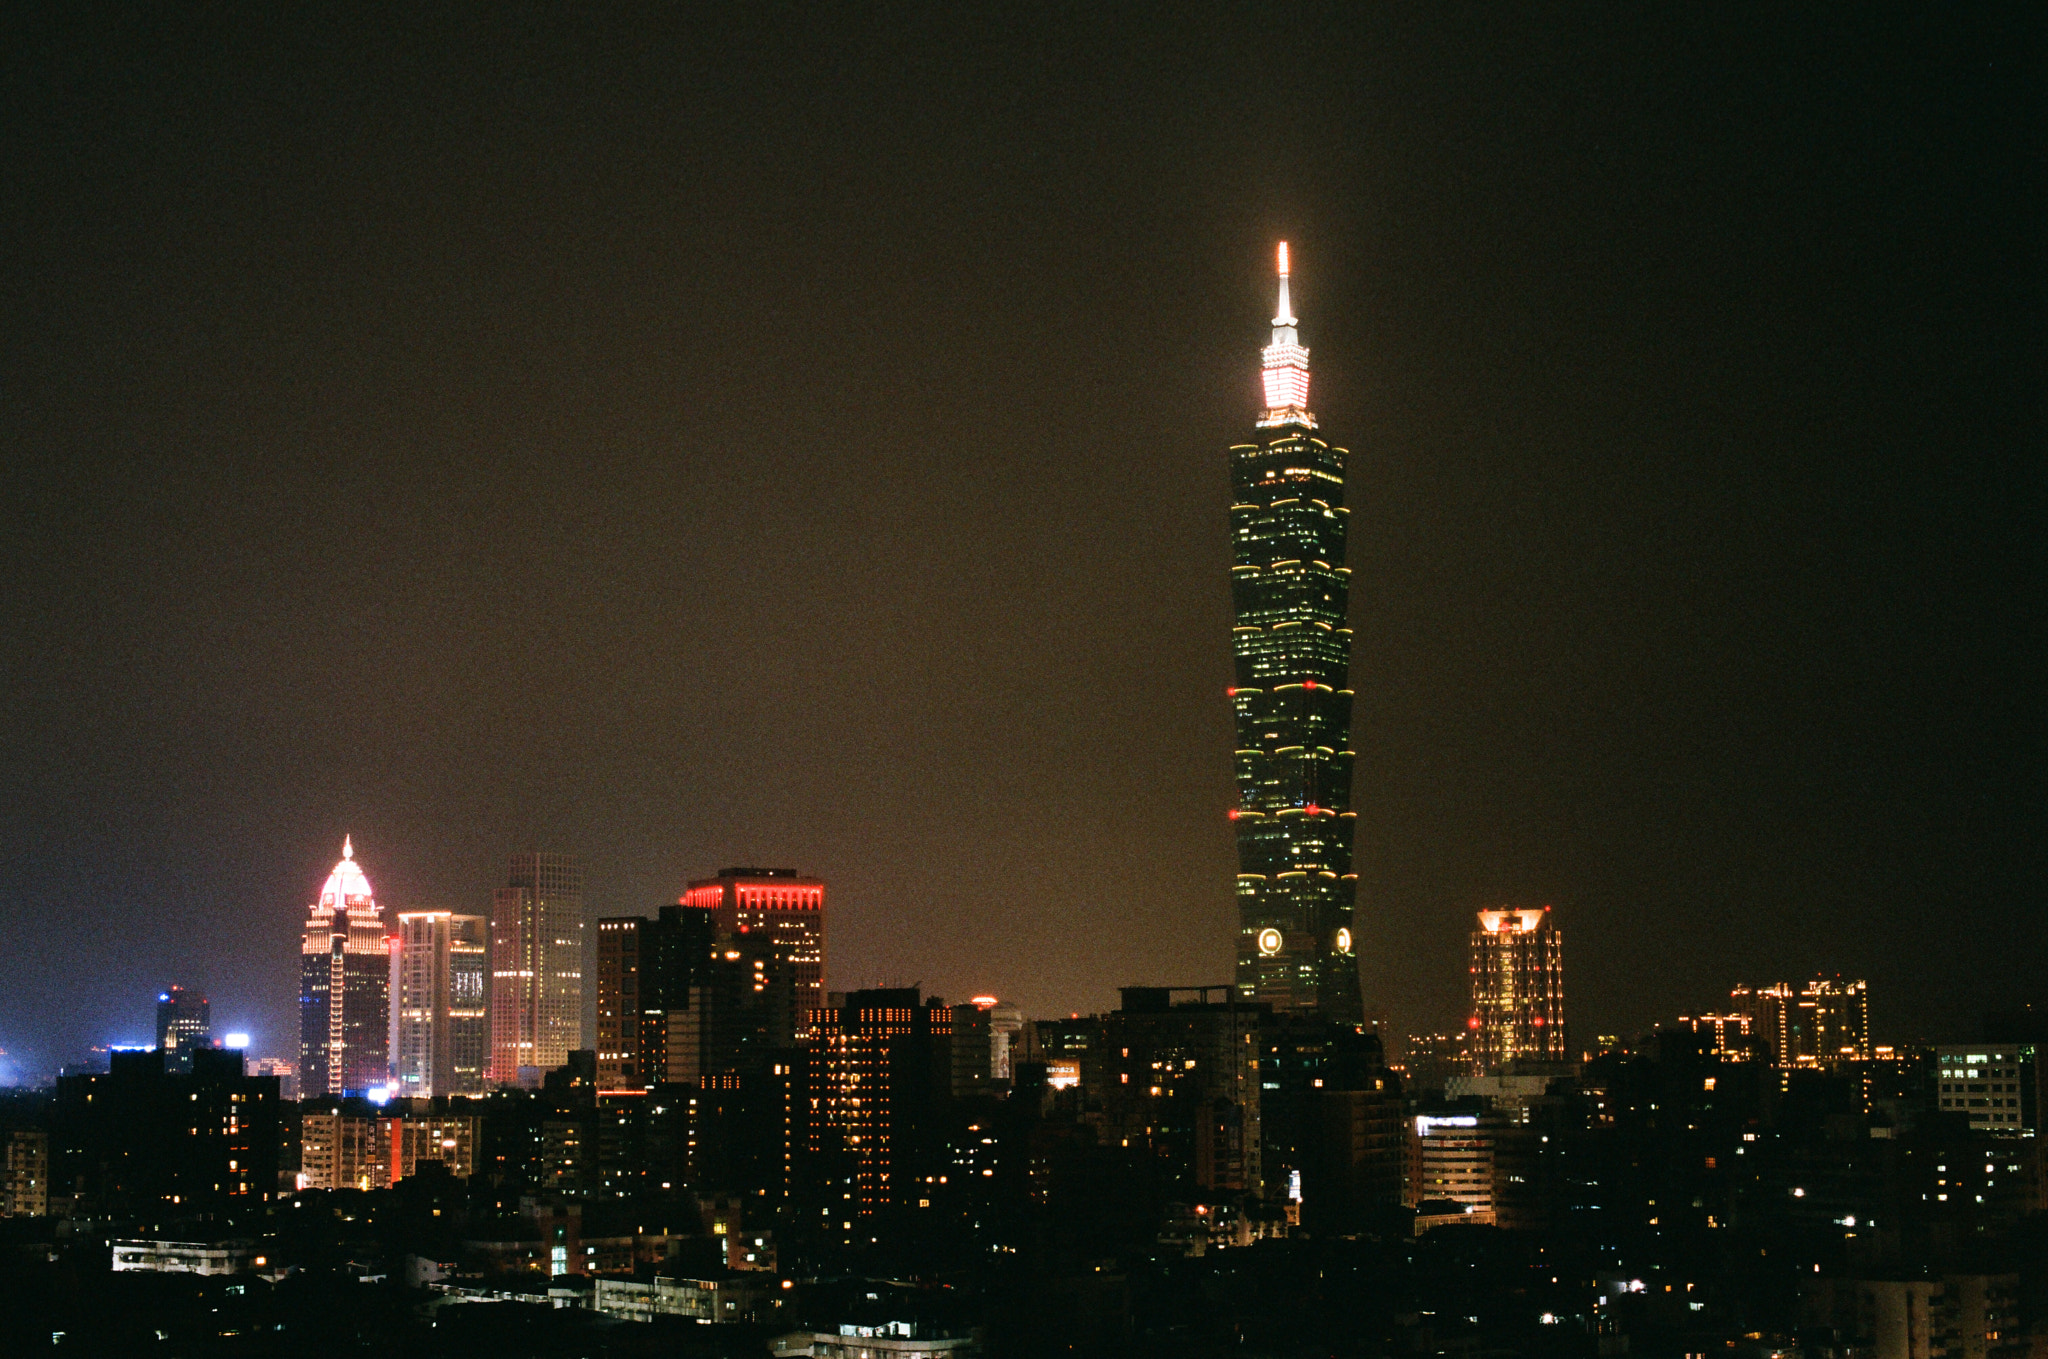 Taipei 101 night view